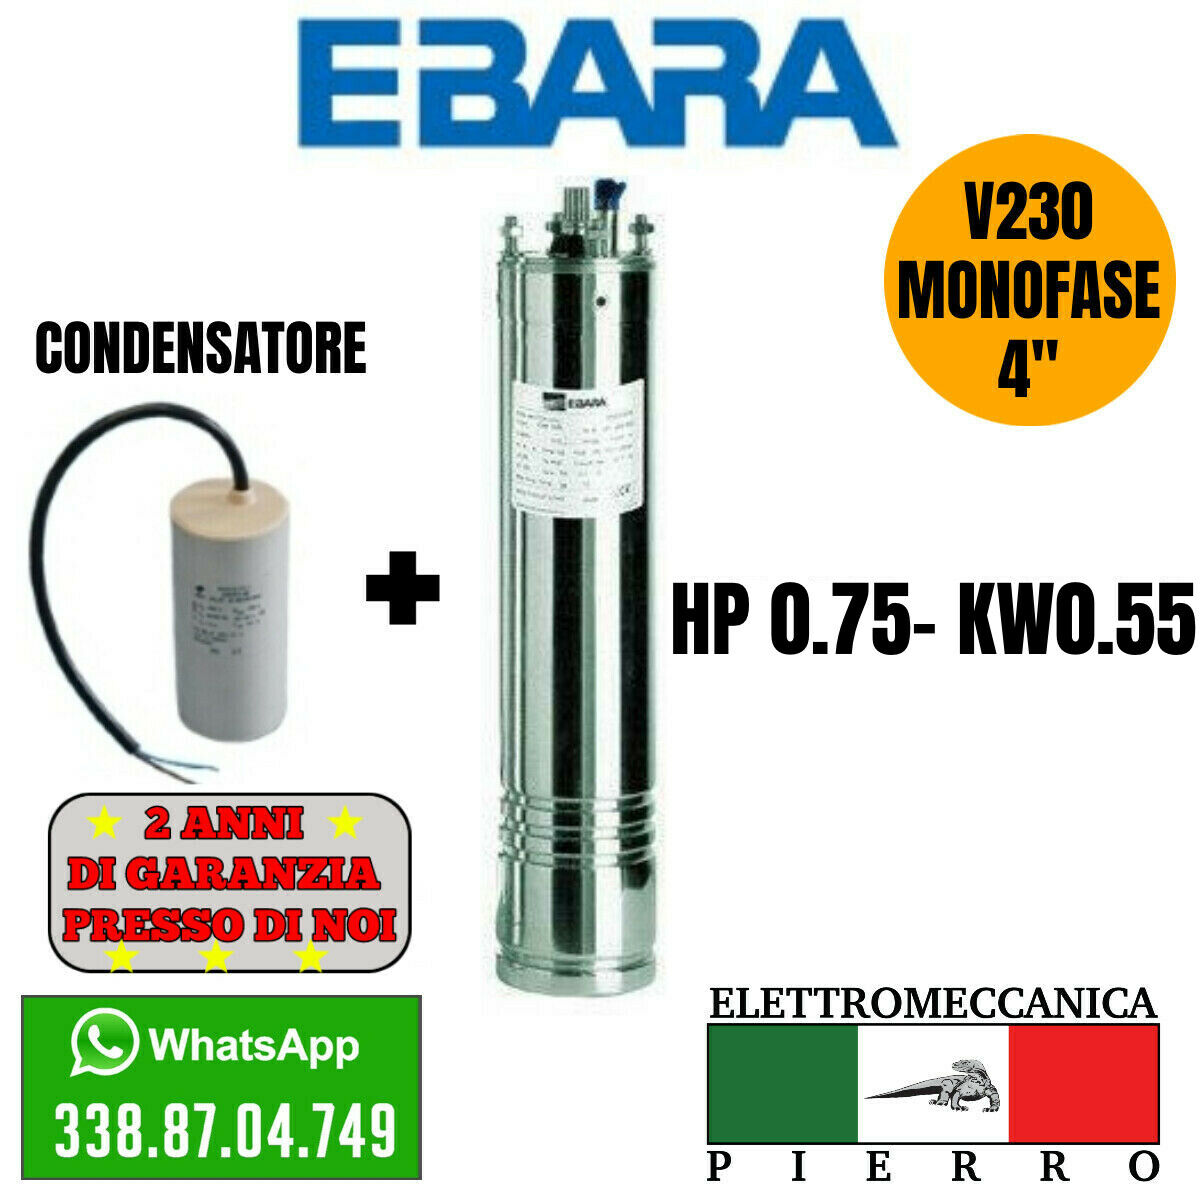 Motore Sommerso per pompa sommersa pozzo HP 0,75 V230 Monofase EBARA Condensatore Logo ellettromeccanica Pierro Elettromeccanica express Assistenza